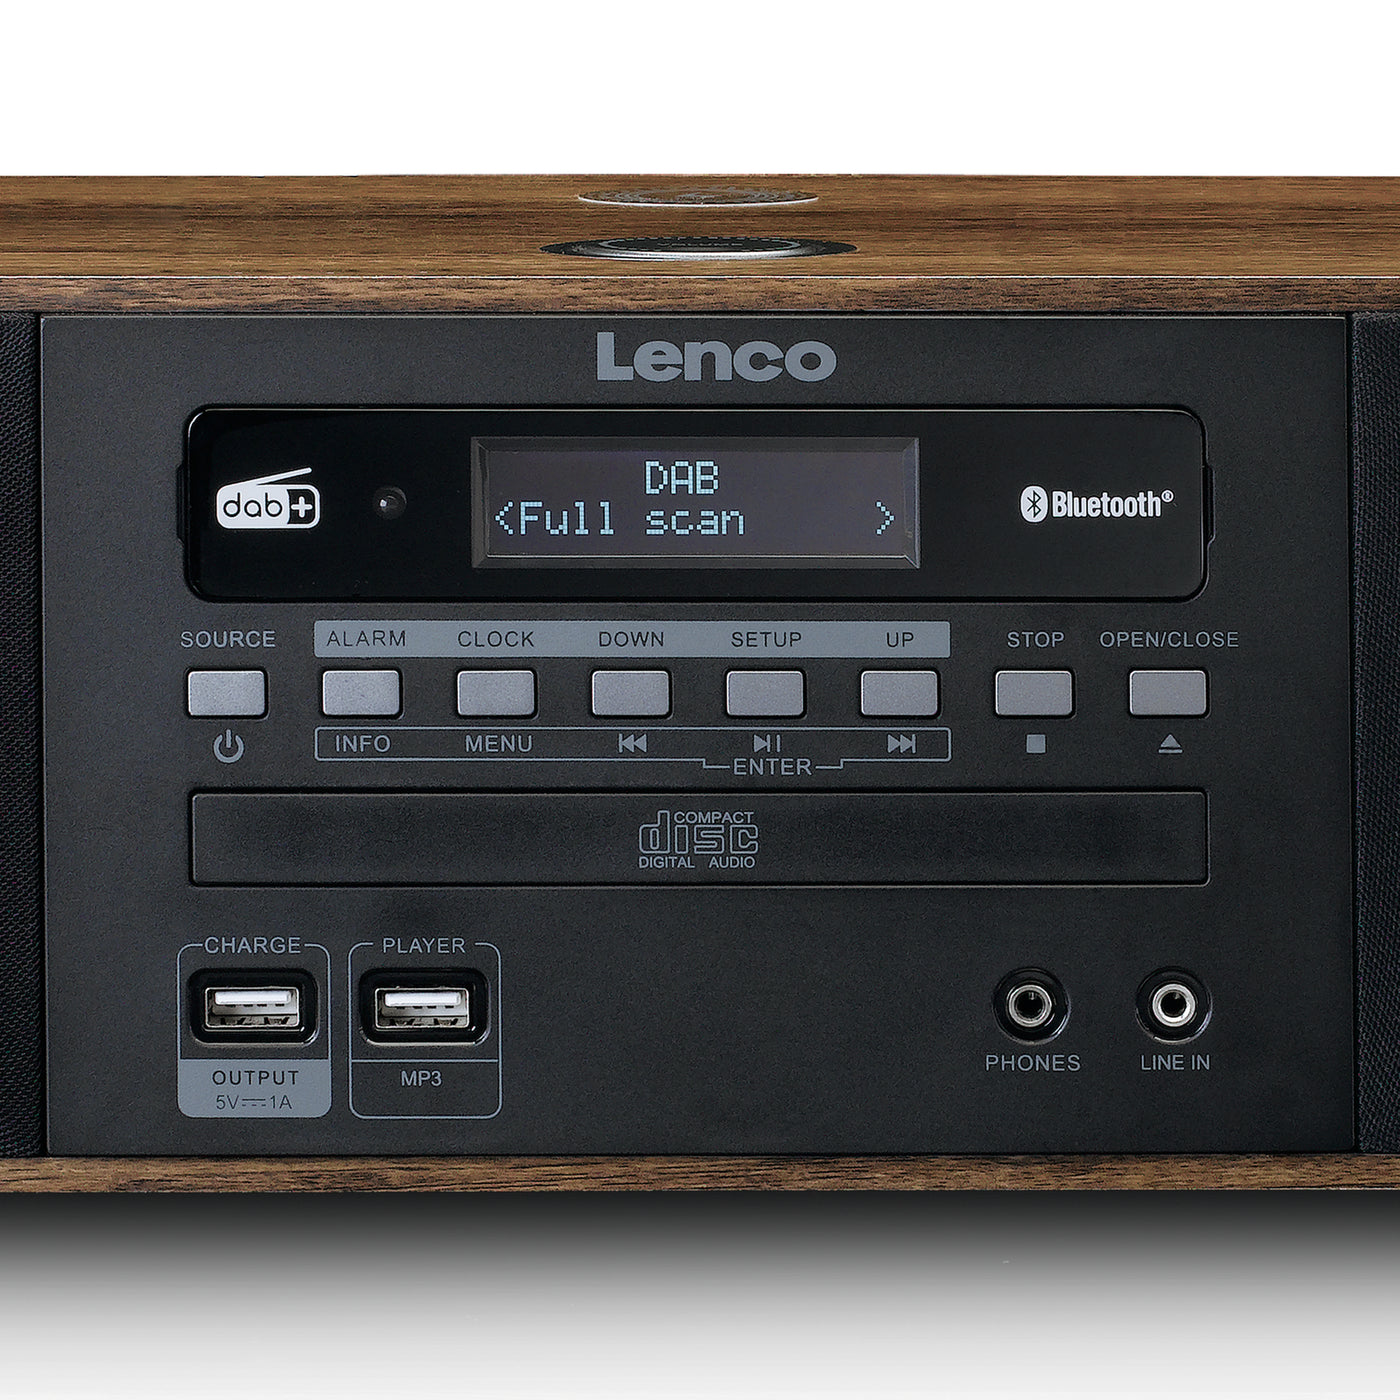 LENCO DAB+/ and QI CD, Stereo DAR-051WD FM Bluetooth®, – Lenco-Catalog - radio, USB, 2